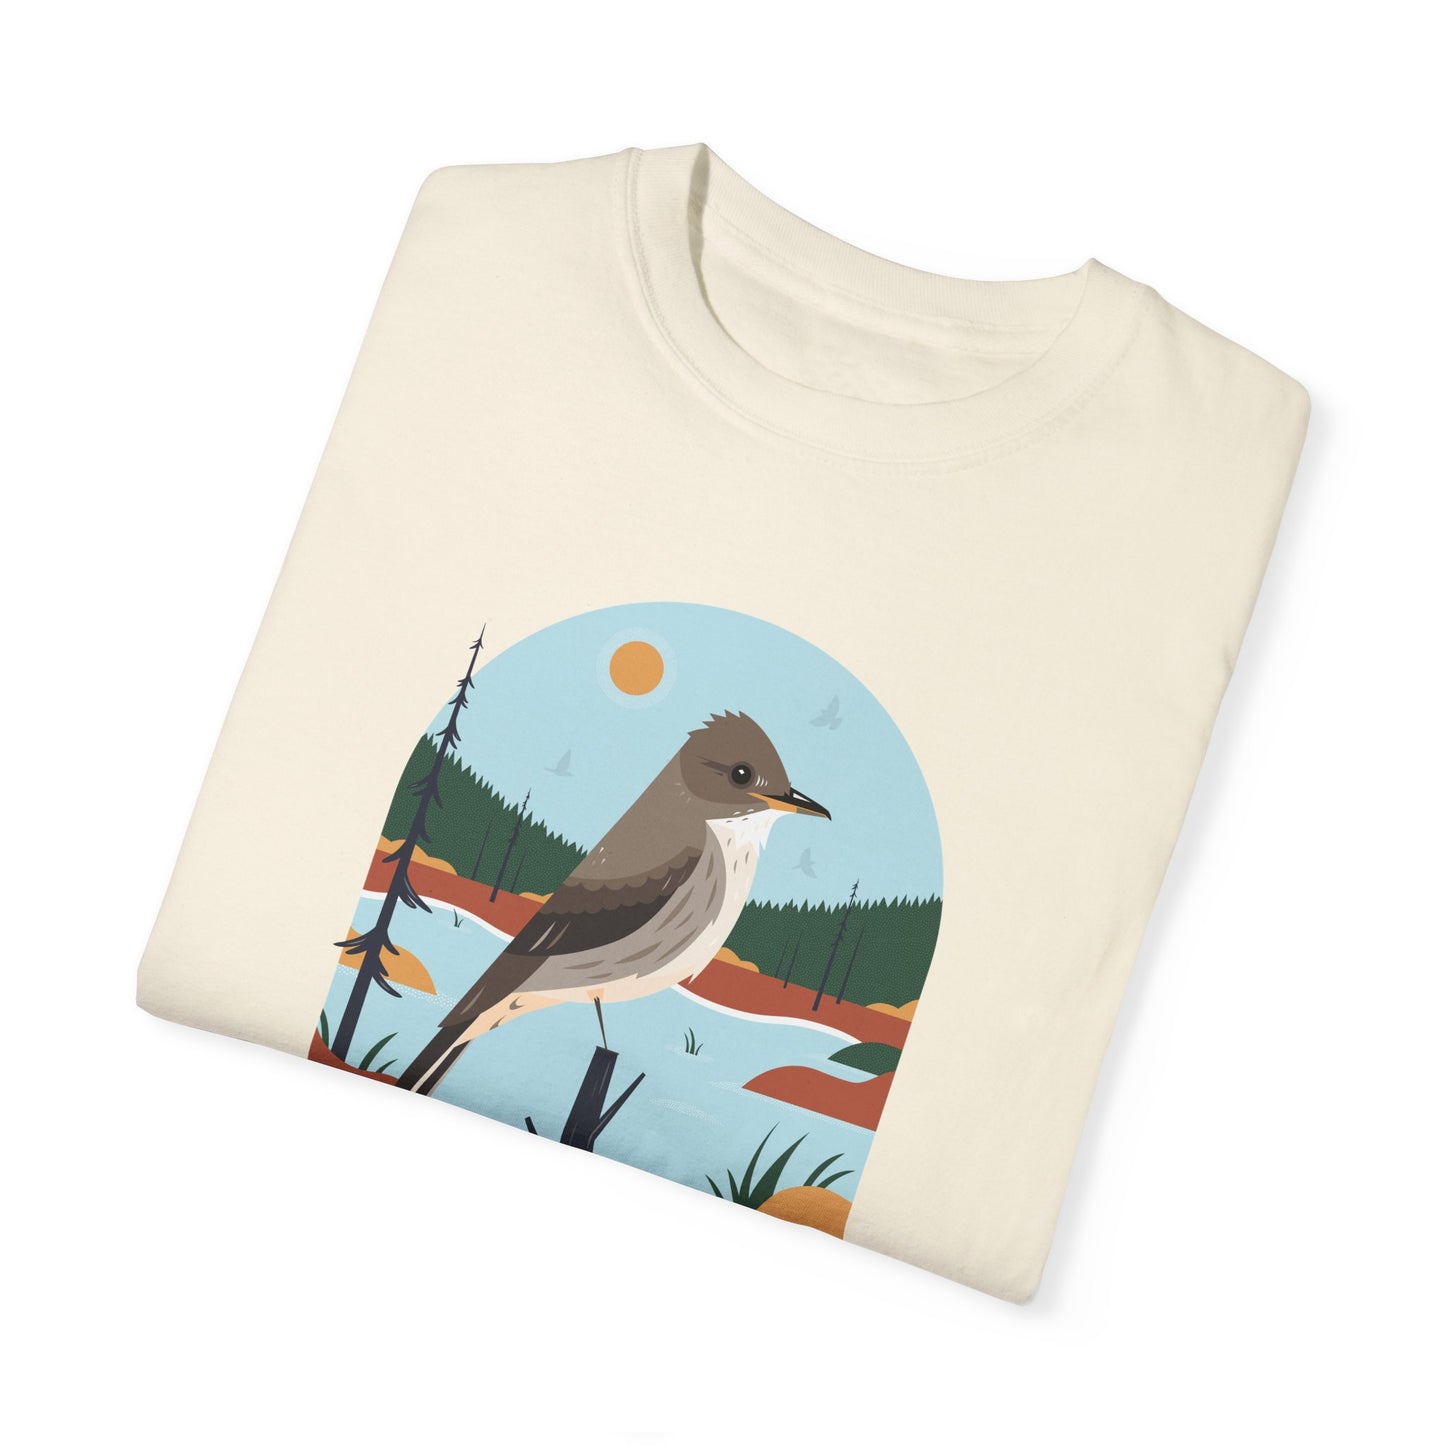 2024 Birdathon T-shirt - English